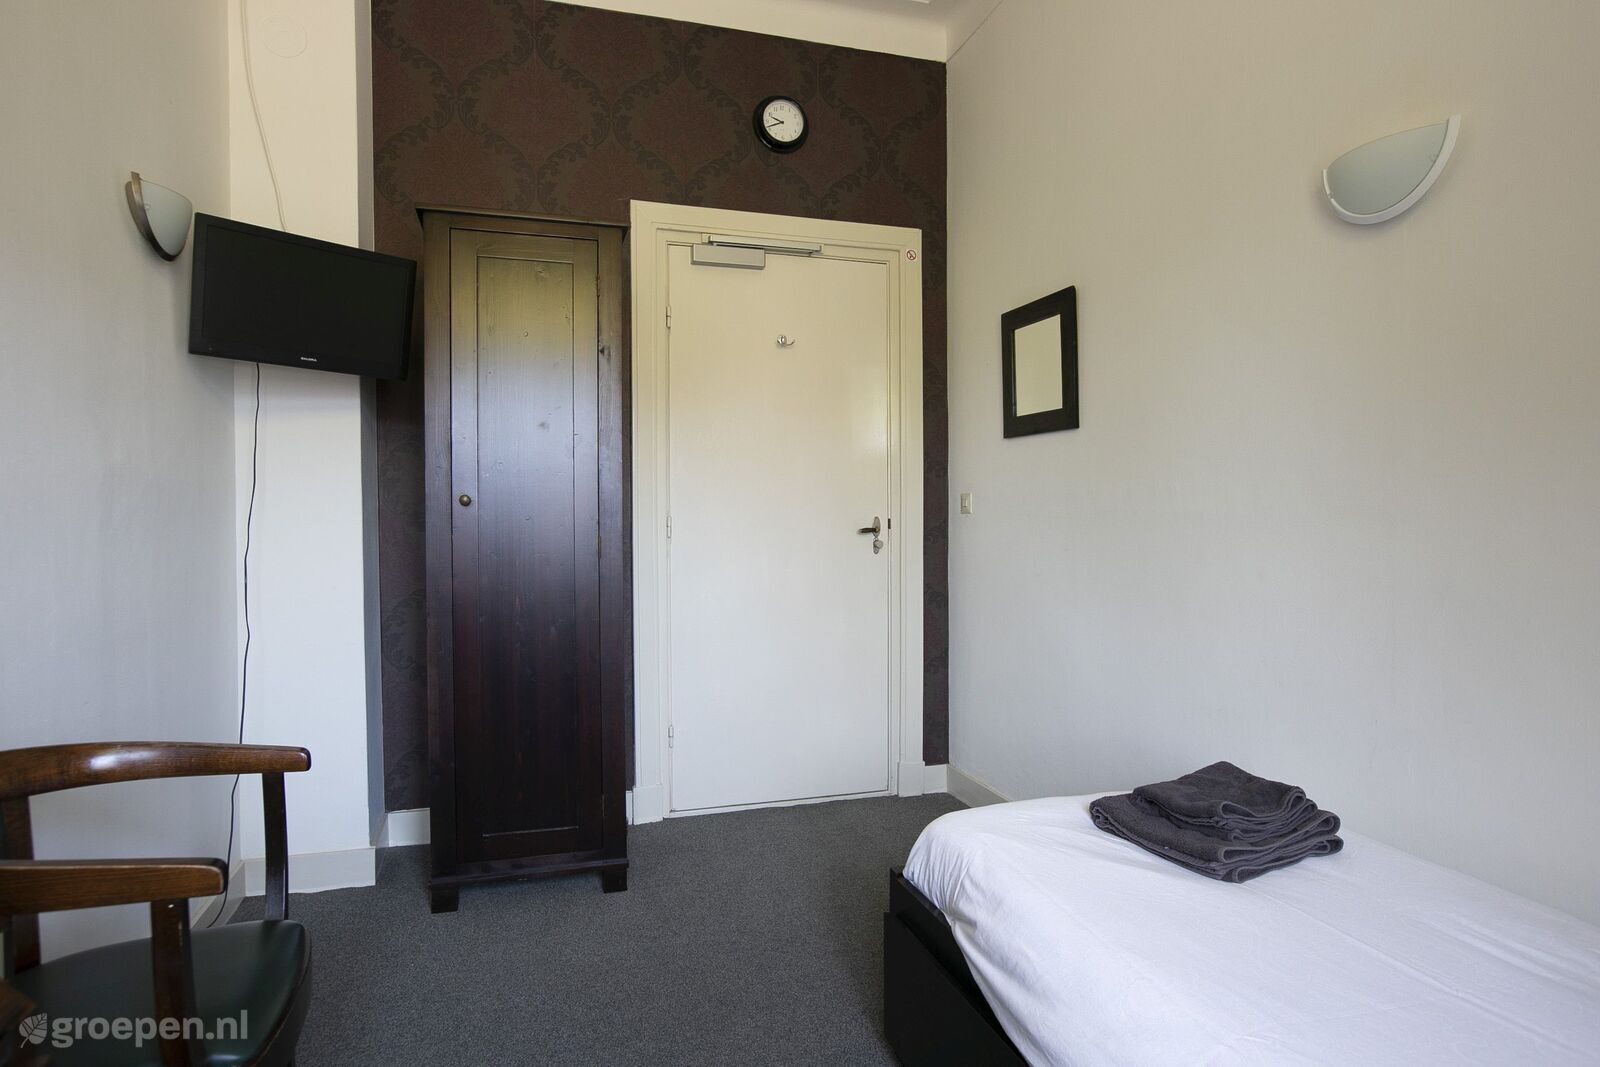 Group accommodation Dalfsen